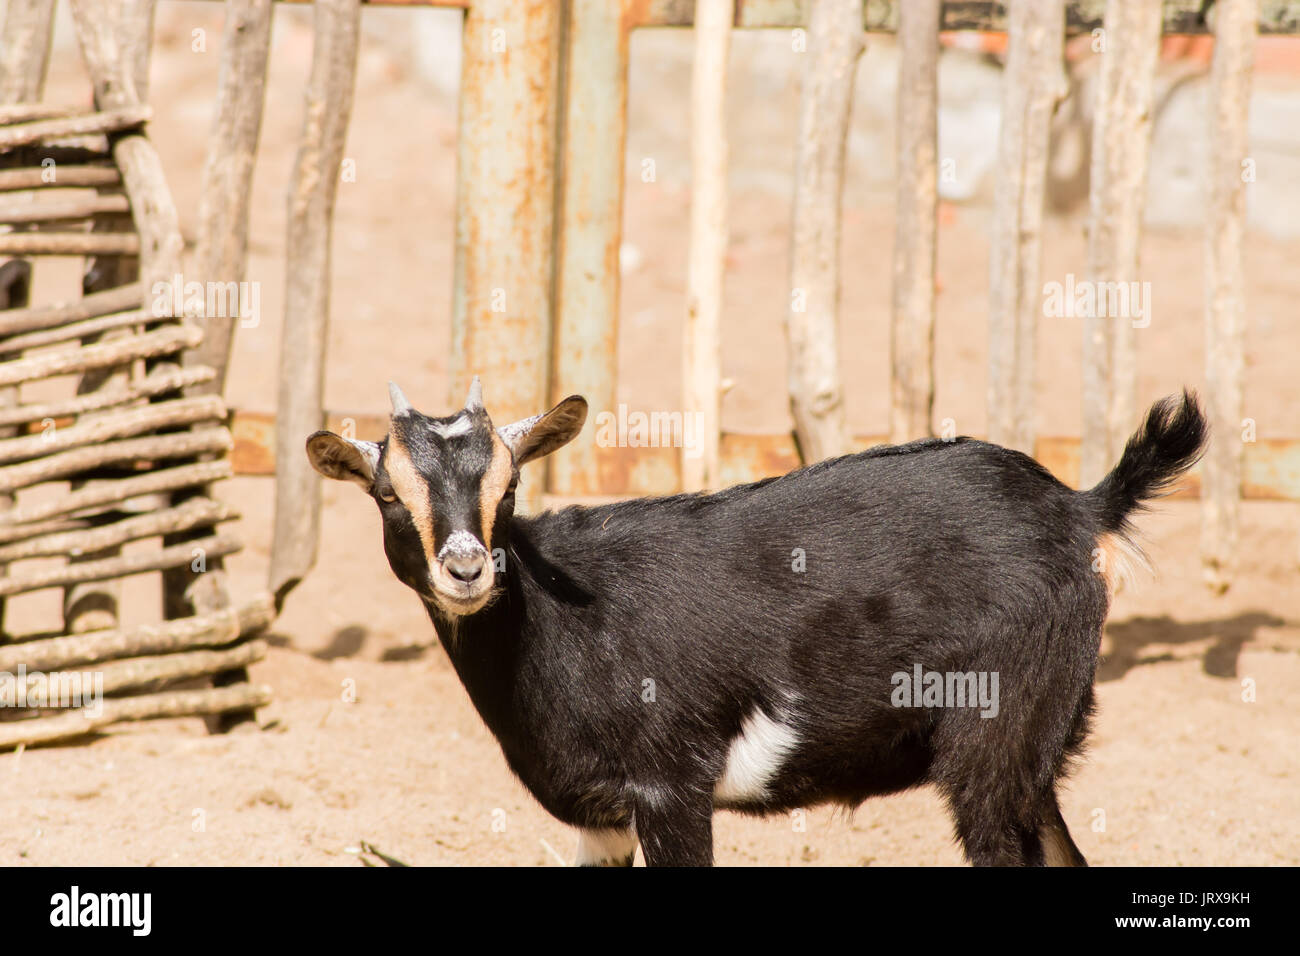 Little goat portrait nature Stock Photo